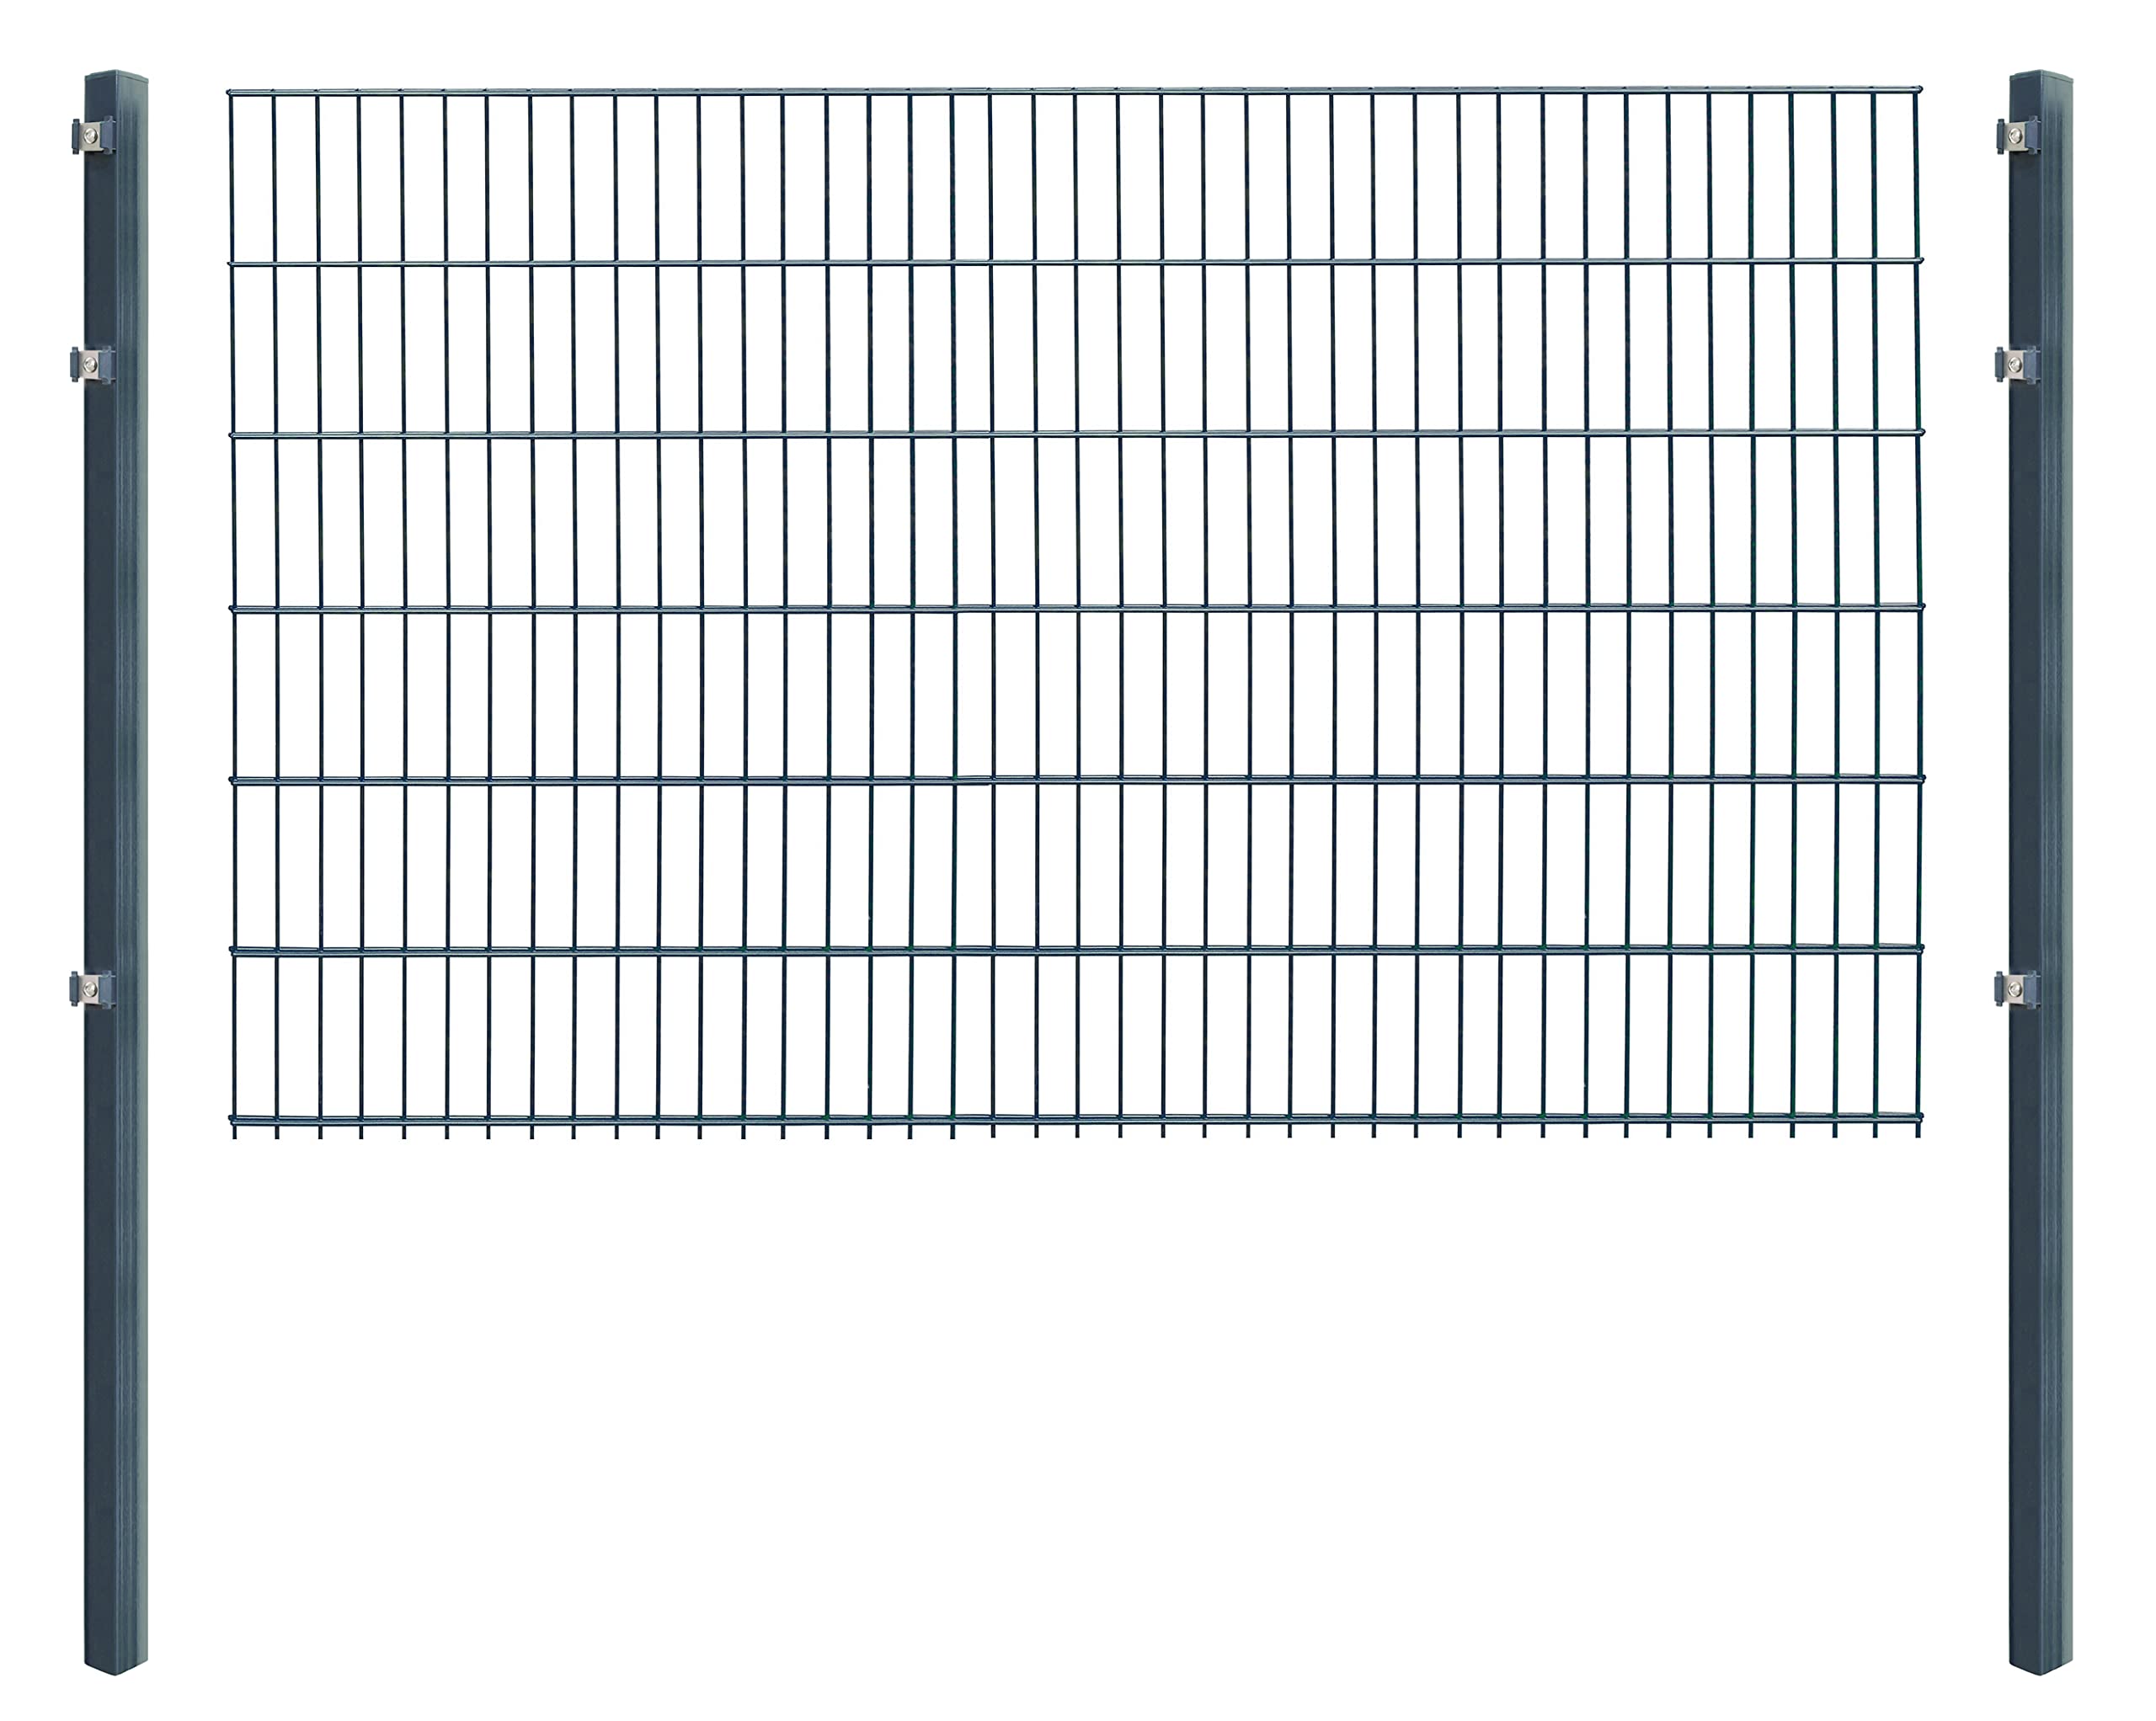 Doppelstabmattenzaun - Komplettset inkl. Pfosten (60x40mm) und Montagematerial - Verschiedene Längen und Höhen – Grün oder Anthrazit (L 12 m - H 123 cm, anthrazit)